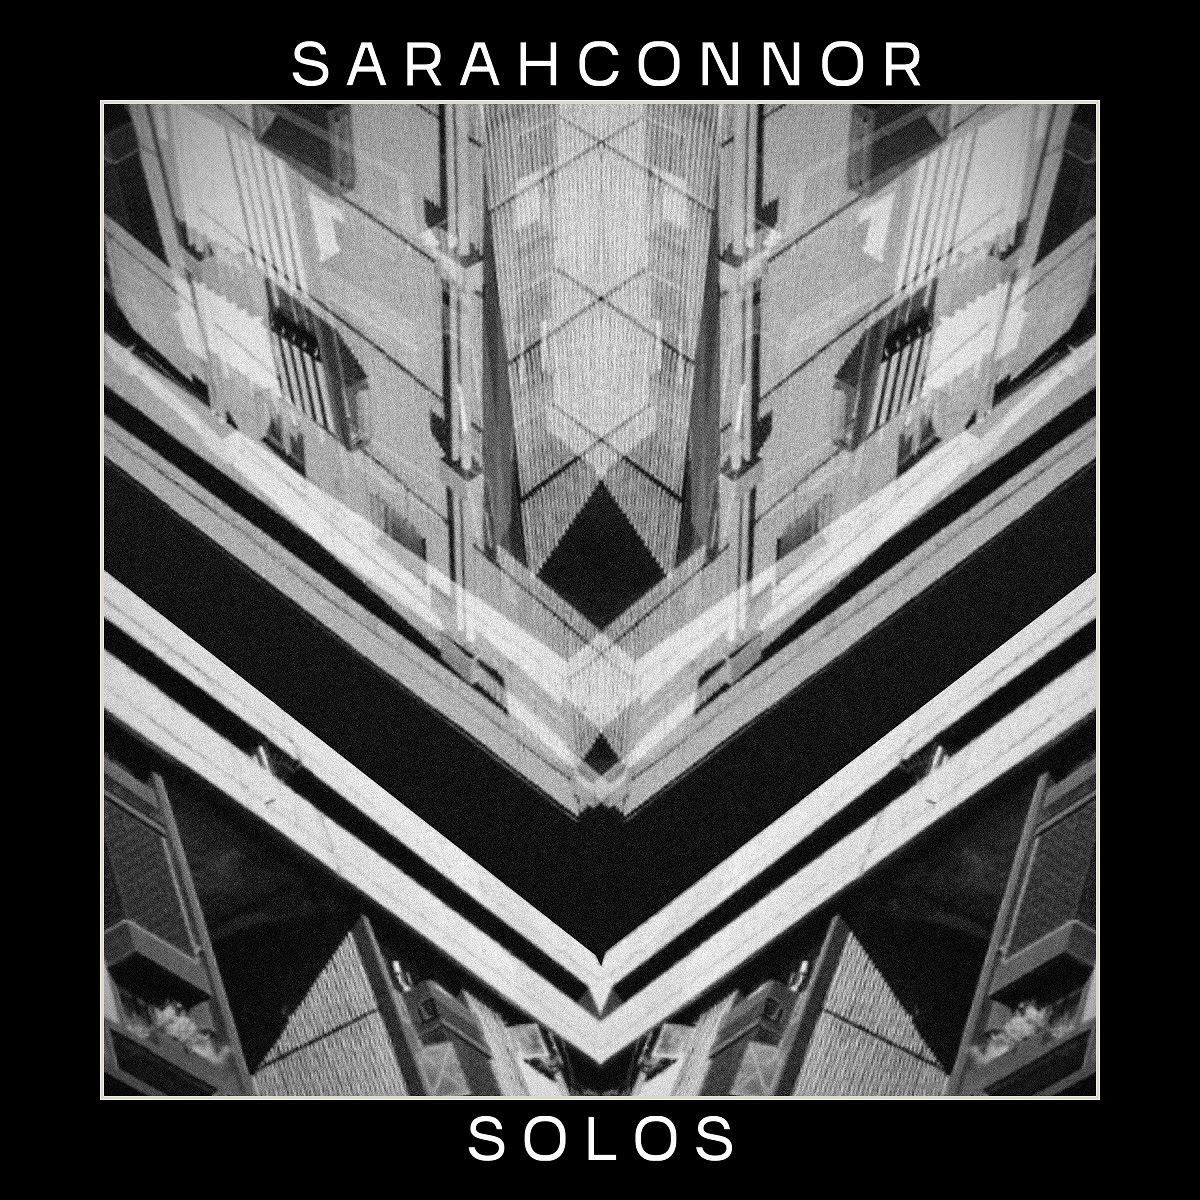 Portada del single "Solos" de Sarah Connor